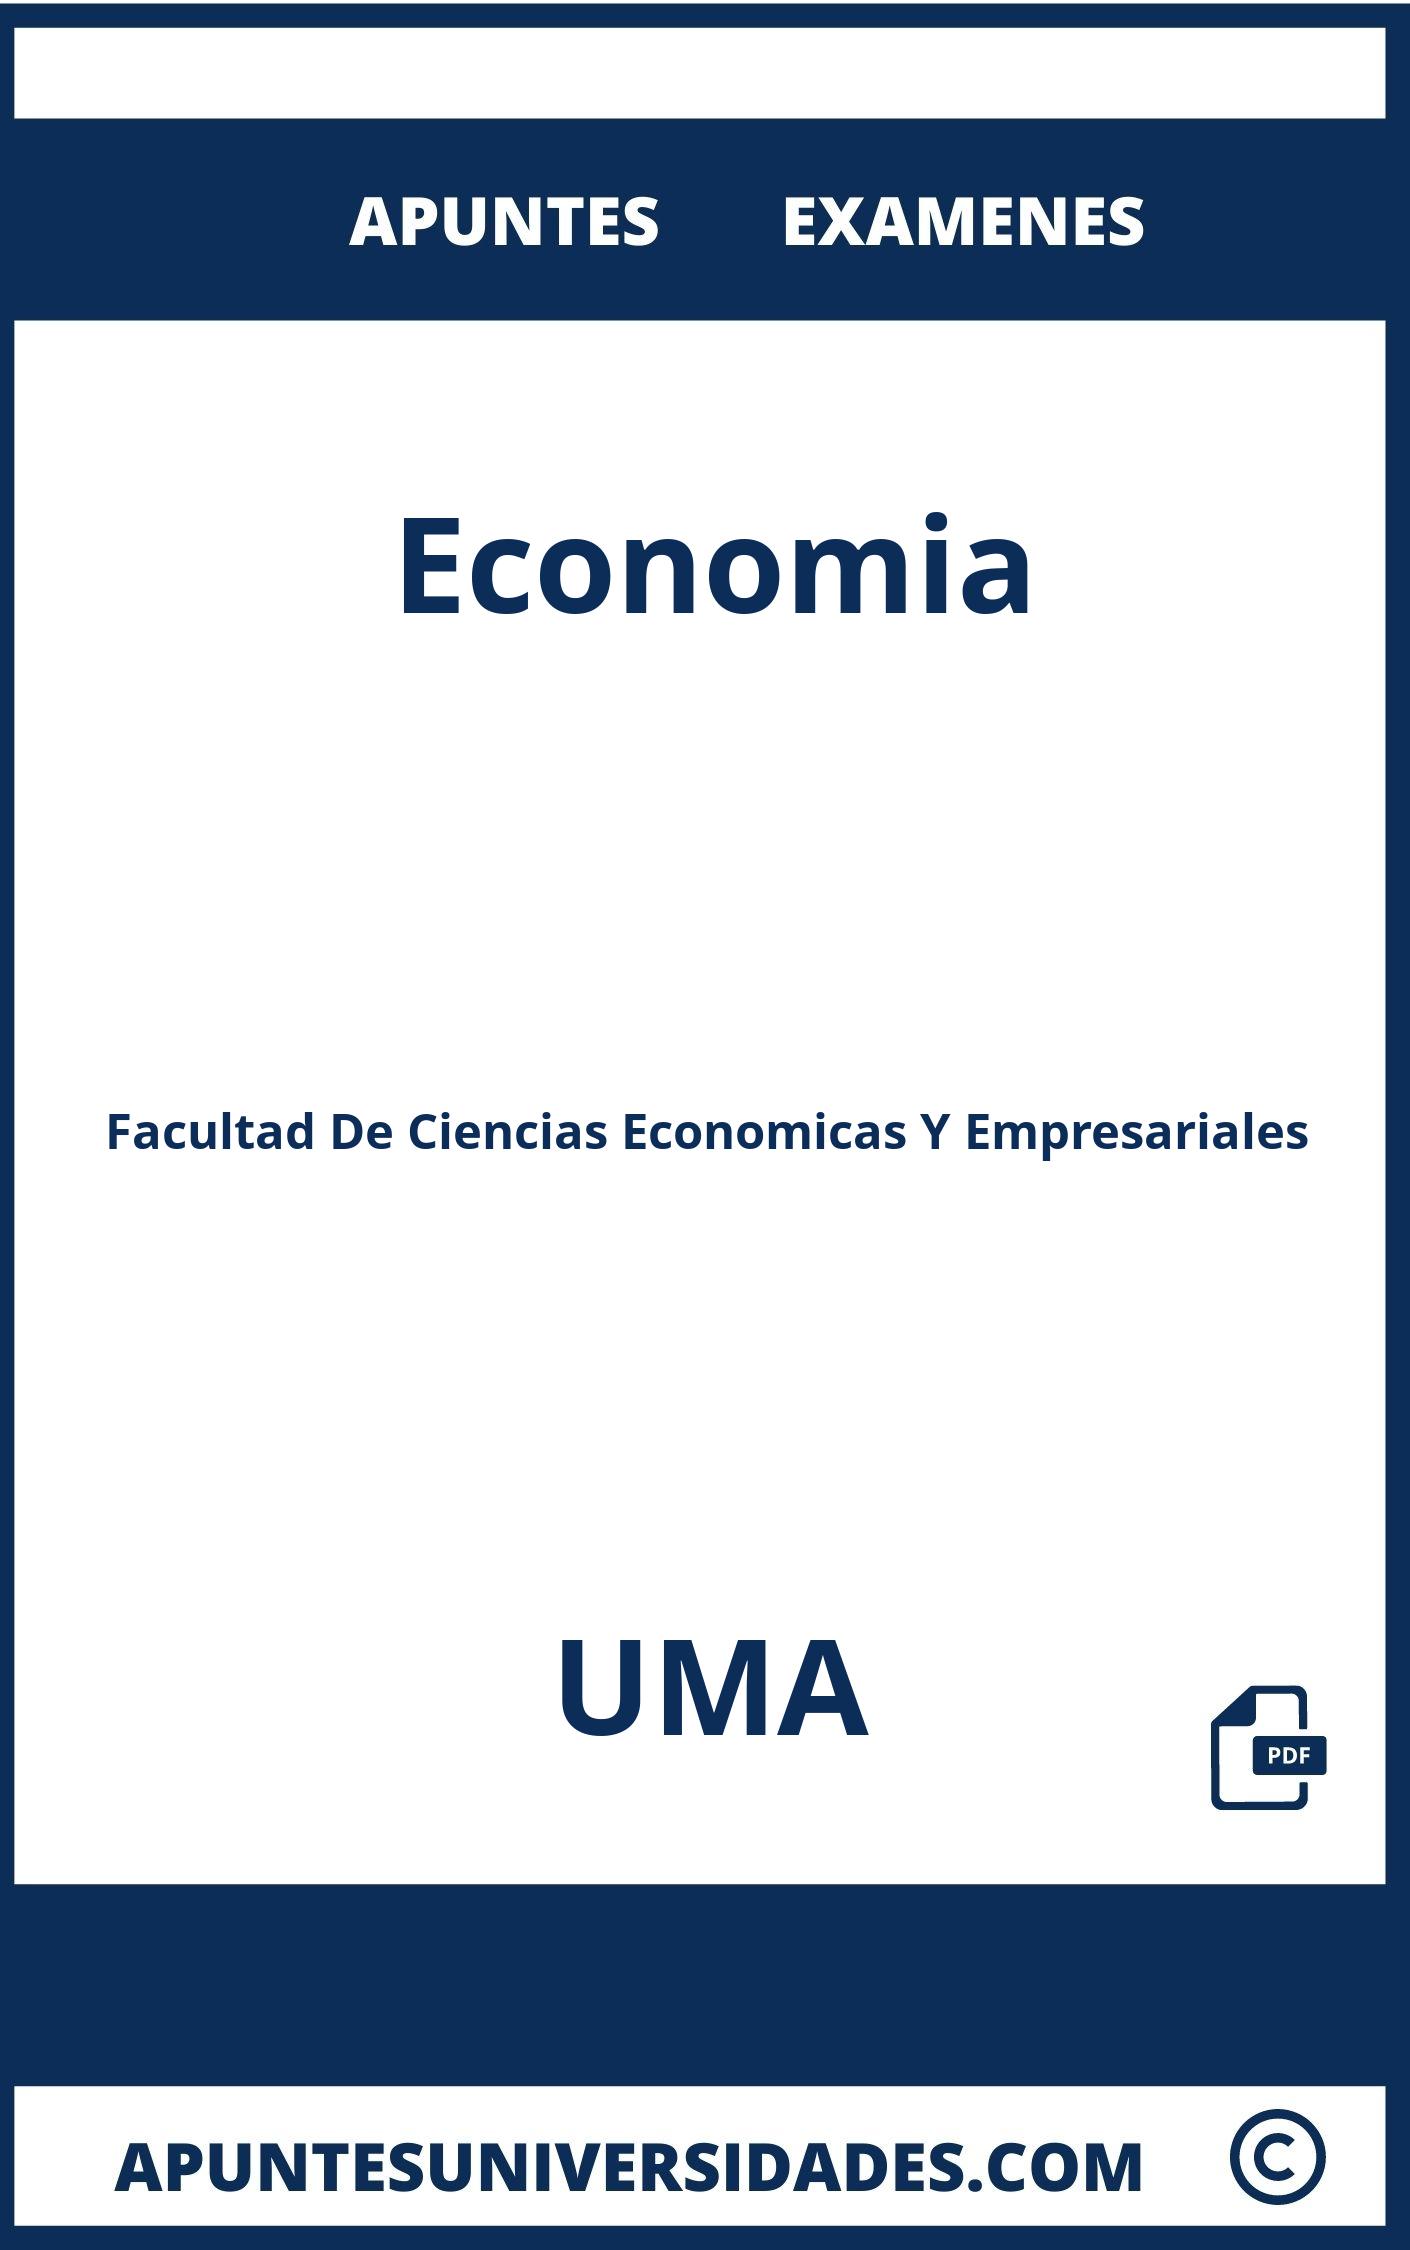 Apuntes Examenes Economia UMA